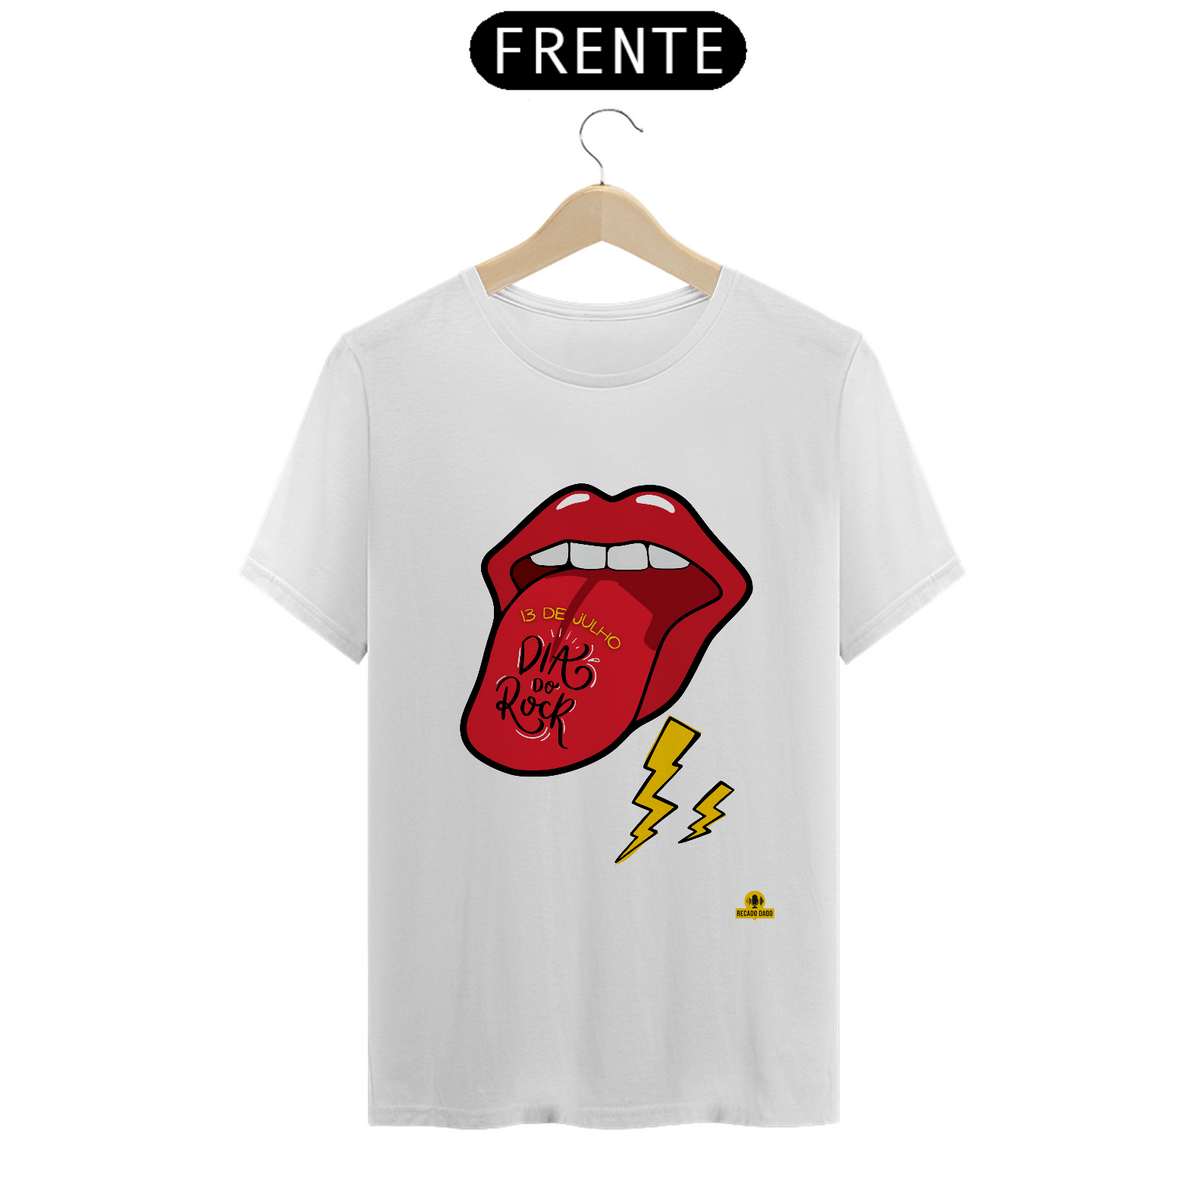 Nome do produto: Camiseta Dia do Rock com estampa de boca com lingua pra fora tipo Rolling Stones.